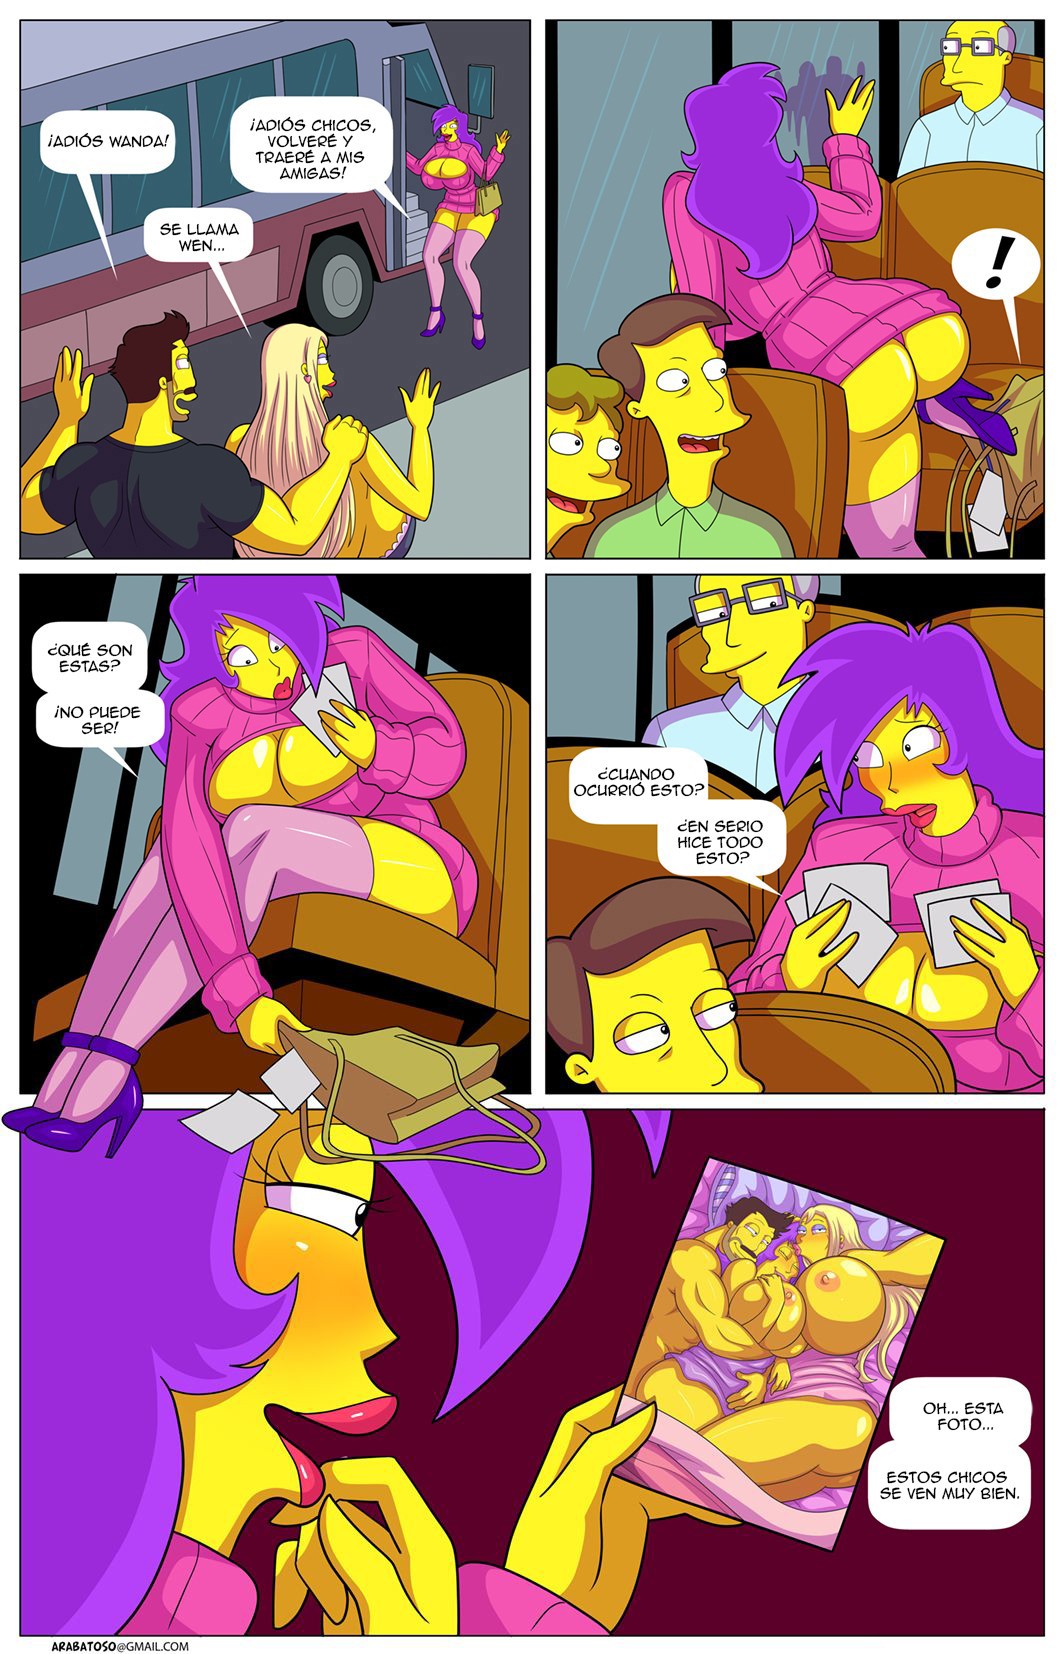 La Aventura de Darren 9 – Los Simpsons - 77935aac69548d1992c56dc503c21e62